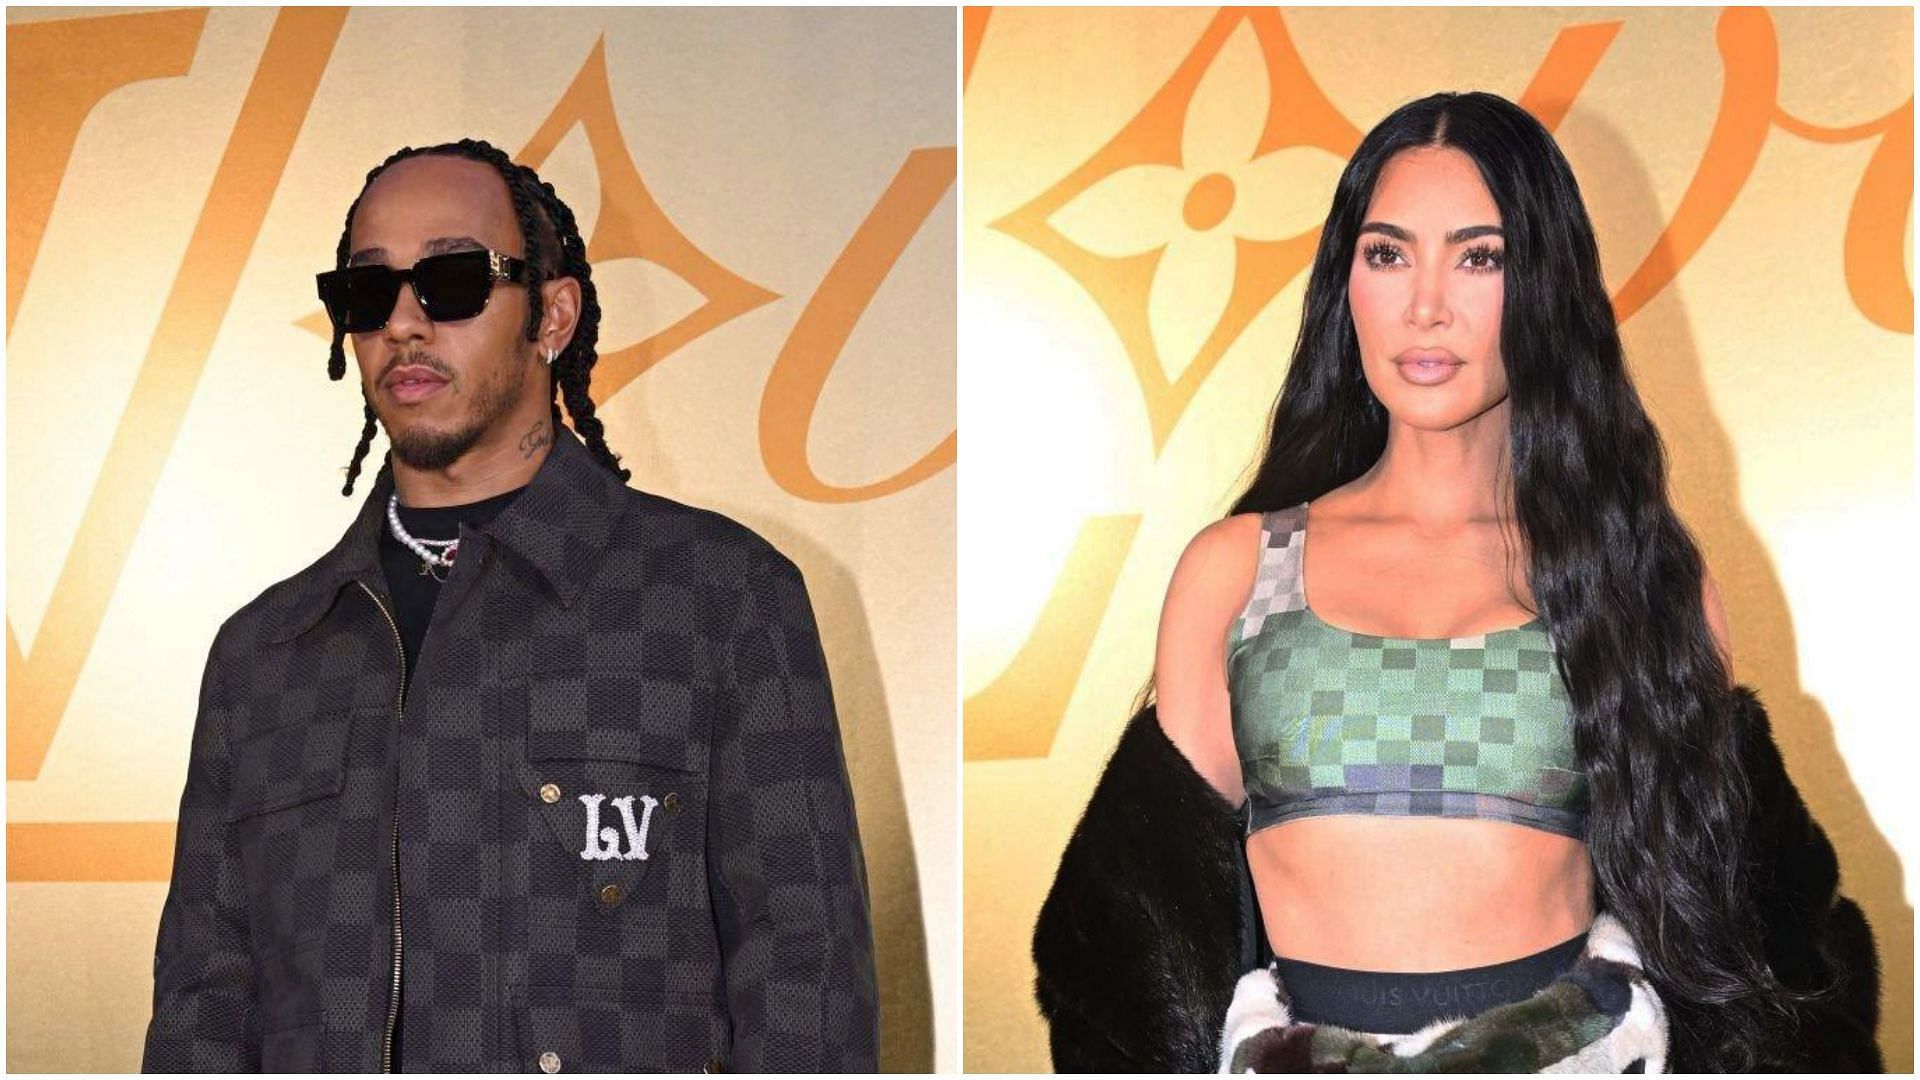 Lewis Hamilton (R) and Kim Kardashian (L) (Collage via Sportskeeda)